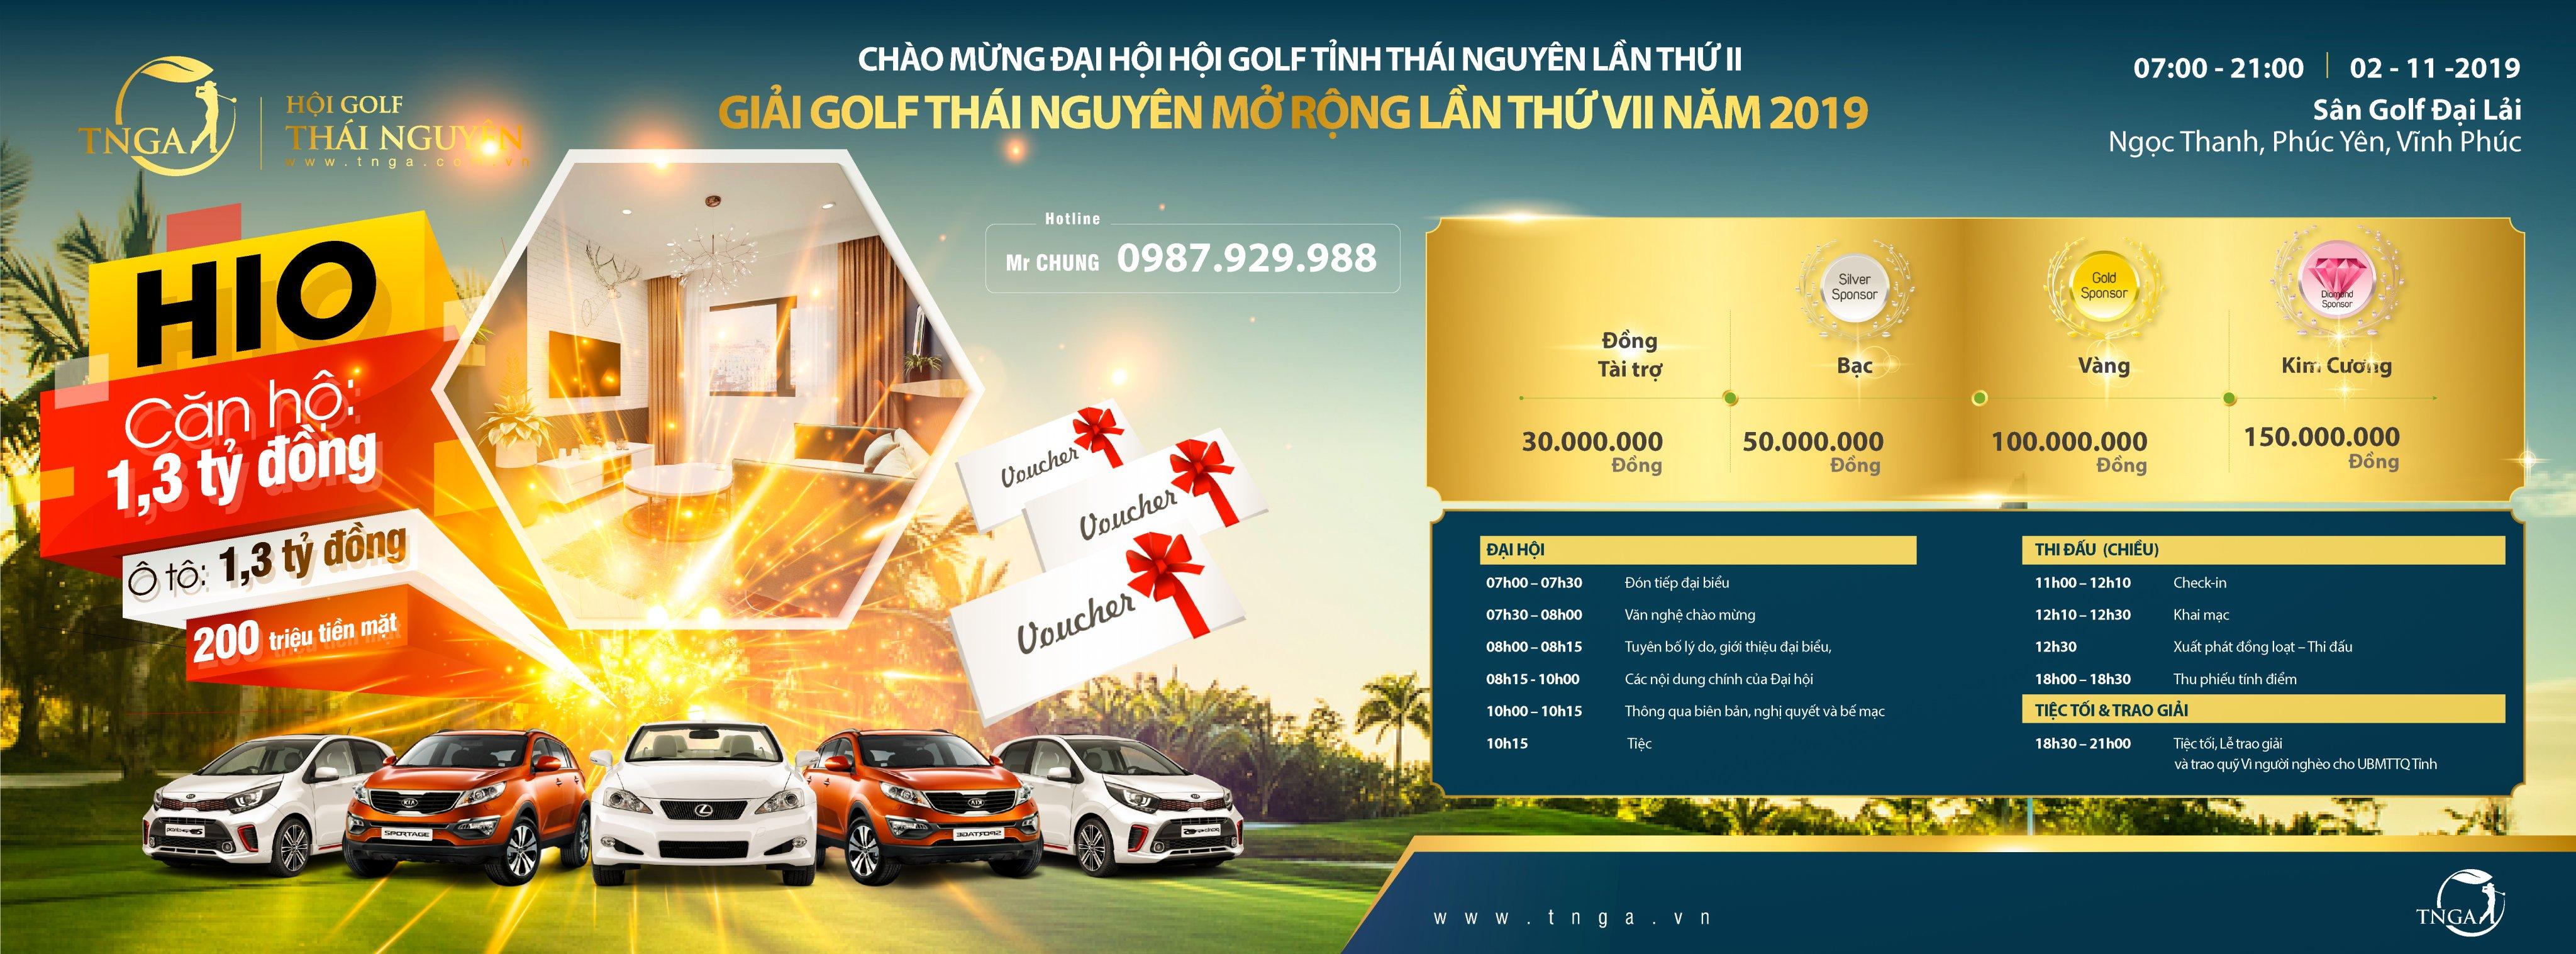 Giải Golf Thái Nguyên mở rộng lần thứ VII 2019 chuẩn bị khởi tranh